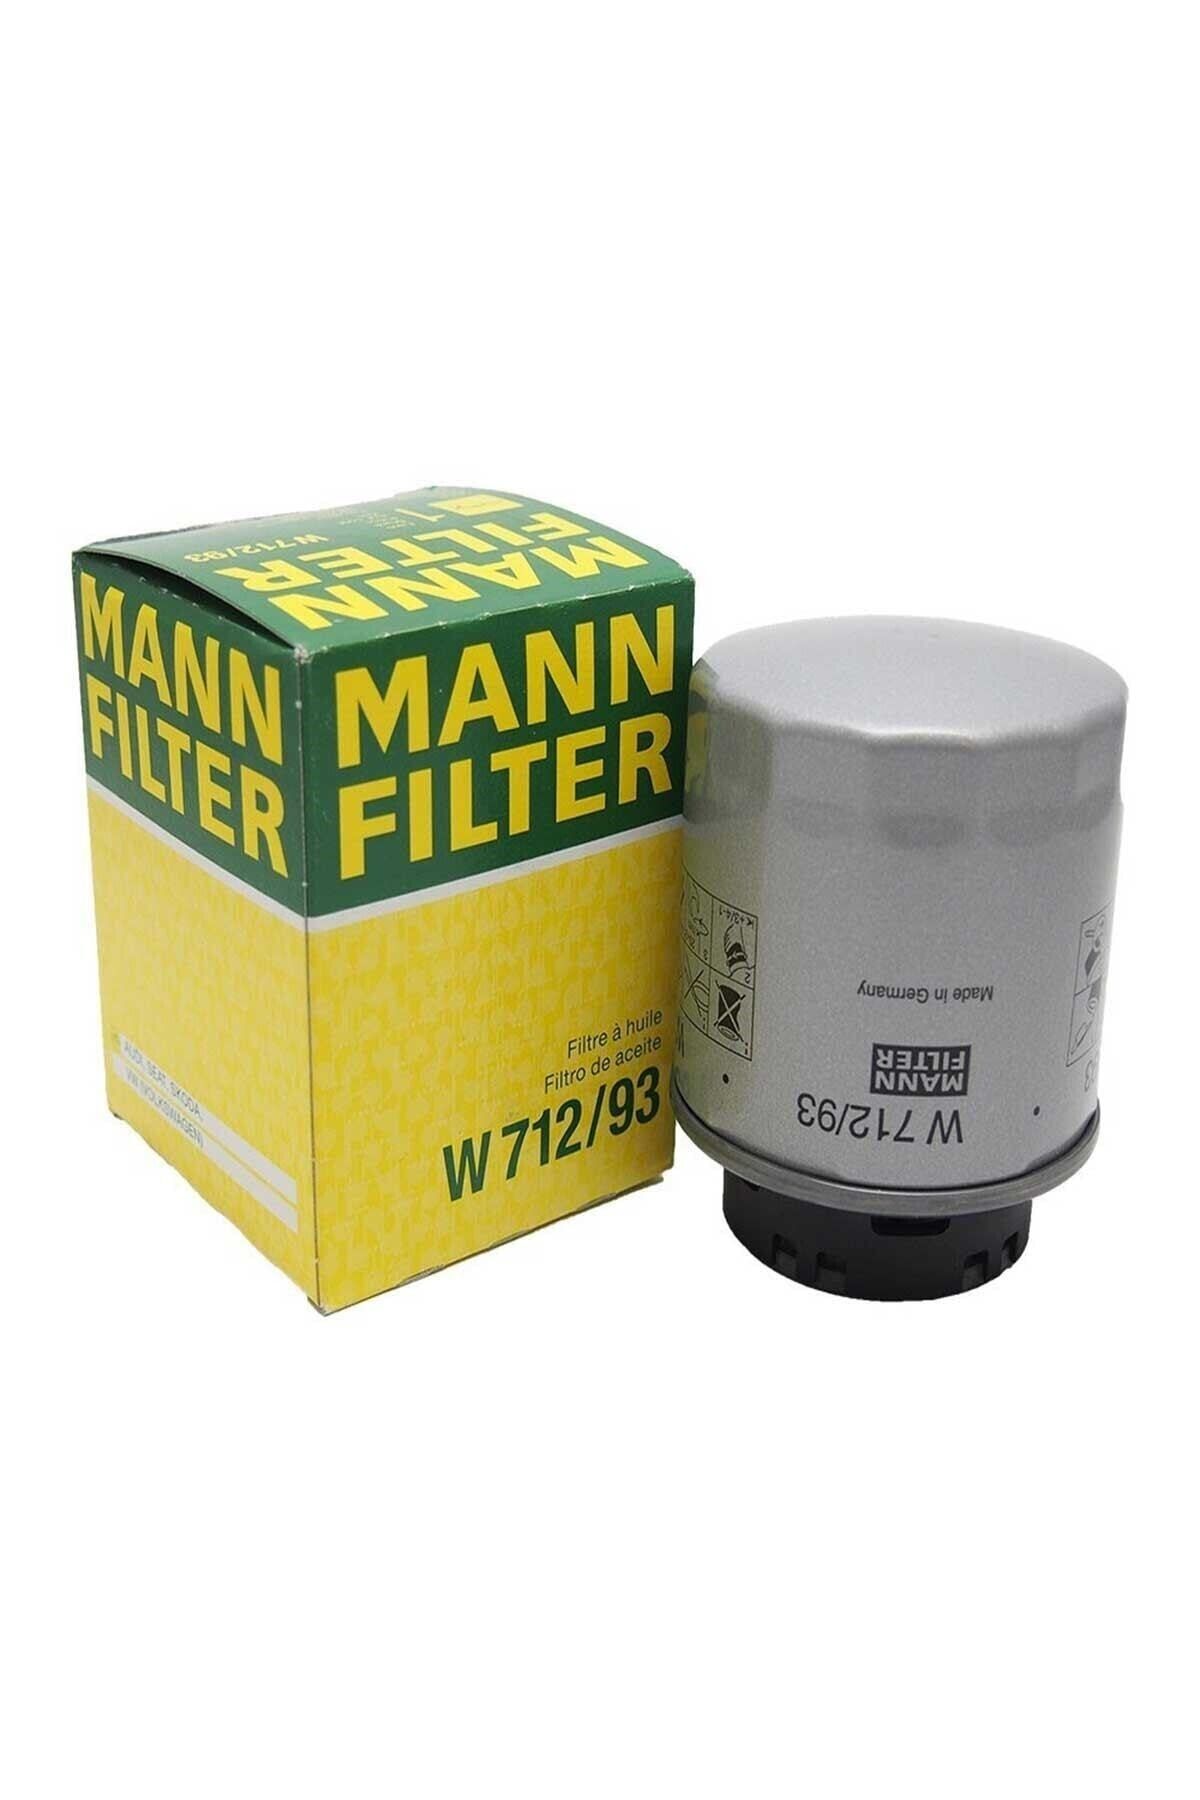 Фильтр масла поло. Mann-Filter w 712/93. Фильтр масляный Mann w712/94. Volkswagen Polo фильтр масляный Mann w712/95. Фильтр MANNFILTER W 712/93.